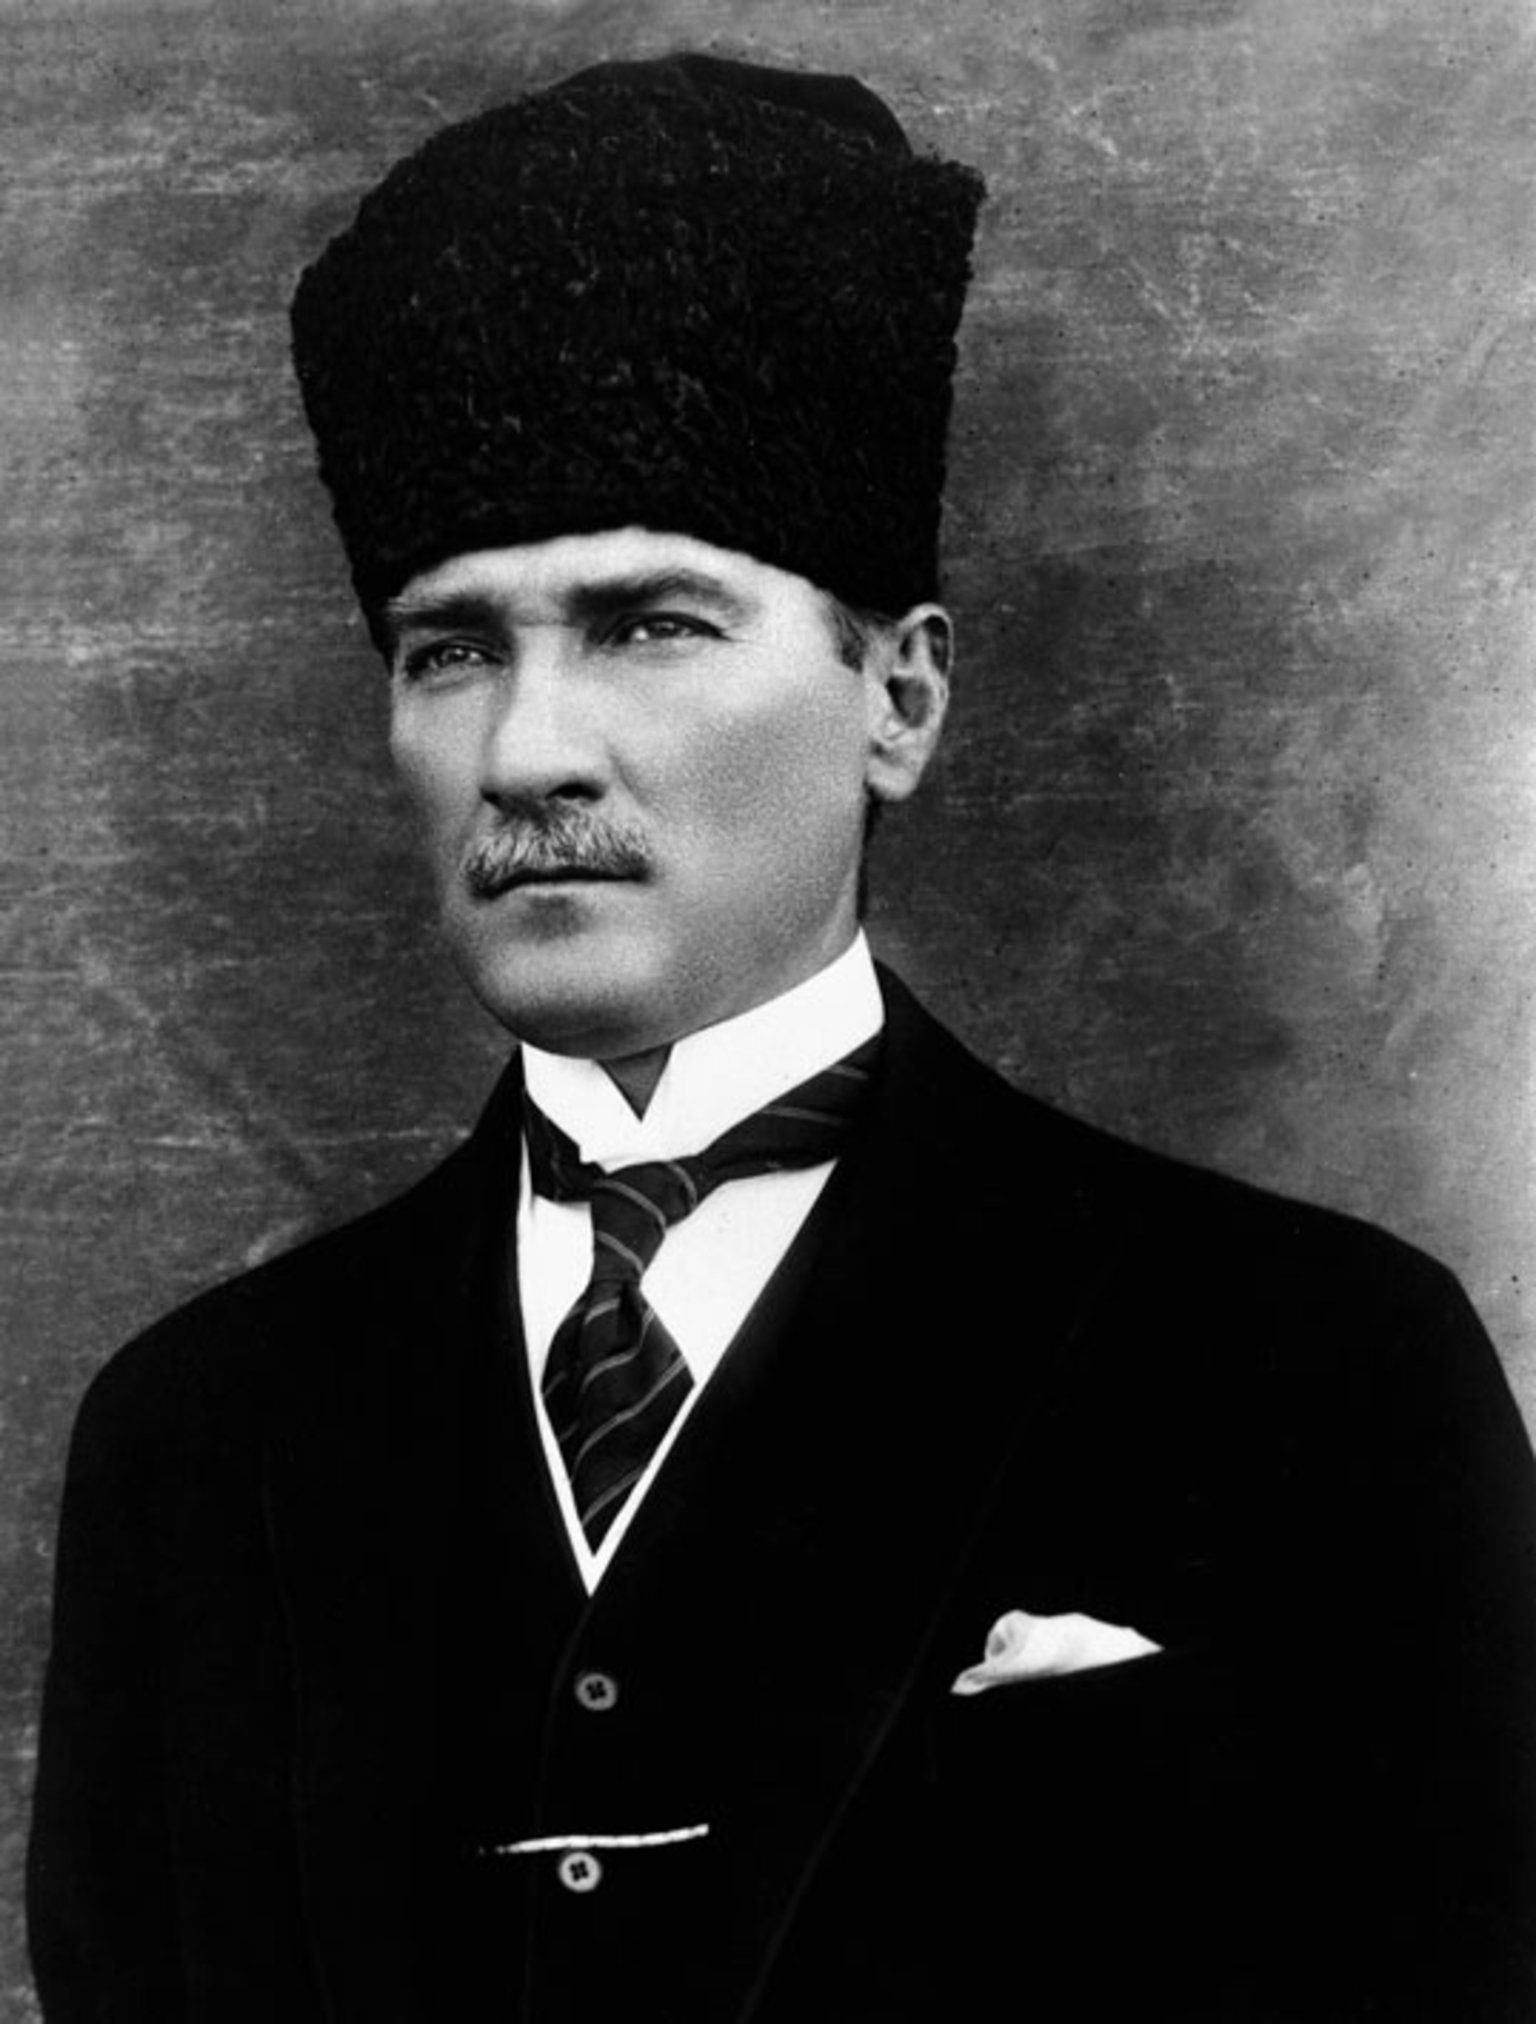 Atatürk siyah beyaz resim, Ataturk resım hizli, resim yükle, indir, hızlı resim url, yükle, Atatürk telefon duvar kagıdı indir, profil resimi, Ataturk resimleri ,Ataturk fotograflari  Atatürk-siyah-beyaz-resim-Ataturk-resım-hizli-resim-yükle-indir-hızlı resim-url-yükle-Atatürk-telefon-duvar-kagıdı-indir-profil-resimi-Ataturk-resimleri-Ataturk-fotograflari  Türkiyyenin  tarihi liderlerinden biri de Mustafa Kemal Atatürkdür. Türk halkı  Atatürkü kendi kahramanı ve lideri larak gördüğü için belkide  Türkiyyede  en çok sevilen bir tarihi şahısdır. Bu günkü yayınımızda Atatürkün siyah beyaz resimlerini size takdim edeceğiz. İsteyen telefonuna indirerek telefon duvar kağıdı olarak kullana bilir ve ya instagram ve facebook profillerinde paylaşa bilirler. Hızlı resim indirmenin bize  sağladığı imkanlardan yararlanarak Atatürkün siyah beyaz resimlerini hd olarak ücretsiz indire bilirsiniz. Resimin üzerine basılı tutarak açılan pencerede resmi indir yazısına tıklayarak fotoğrafları indire bilirsiniz     ATATÜRK'ÜN HAYATI KISACA Mustafa Kemal Atatürk 1881 yılında Selanik’te doğdu. Ali Rıza Efendi babası,  Zübeyde Hanım ise annesidir. Mustafa Kemal Atatürk’ün eğitim aldığı okullar baştan sona  şöyledir; ilkokul eğitimini Mahalle Mektebinde ve Şemsi Efendi Okulunda, ortaokul eğitimini  Selanik Mülkiye Rüştiyesi ve Selanik Askeri Rüştiyesinde, lise eğitimini Selanik Askeri  İdadisi, üniversite eğitimini ise Harp Okulu ve Harp Akademisinde almıştır. 1893 yılında  Askeri Rüştiye’de okurken matematik öğretmeni ona Kemal ismini verdi ve böylece ismi  Mustafa Kemal oldu.  I. Dünya Savaşı nihayete erdiğinde Mondros Ateşkes antlaşması imzalanması ile vatan  topraklarını paylaşılacaktı. Fakat duruma el koyan Mustafa Kemal, 19 Mayıs 1919’da  Samsun’a çıkarak milli mücadelenin temellerini attı.23 Nisan 1920 tarihinde TBMM’nin  açılmasına önder olan Mustafa Kemal Meclis tarafından da Hükümet Başkanı seçildi. 5  Ağustos 1921’de yine Meclis tarafından Başkomutan seçildi. Sakarya Savaşı’nın  kazanılmasındaki büyük emeklerinden dolayı Gazilik unvanı ve Mareşallik rütbesi ile  şereflendirildi.  29 Ekim 1923 tarihinde Cumhuriyet ilan edildi ve Mustafa Kemal Atatürk Türkiye  Cumhuriyeti’nin ilk Cumhurbaşkanı koltuğuna oturdu. 1934 yılında Gazi Mustafa Kemal’e  meclis “Atatürk” soyadını lâyık gördü.  10 Kasım 1938 tarihinde Dolmabahçe Sarayı’nda hayatına veda etti. Tüm ülkeyi yasa  boğdu. Ancak inkılapları ve ülkemize kazandırdıklarıyla kalbimizde sonsuzluğu ulaşmış bir  liderdir.